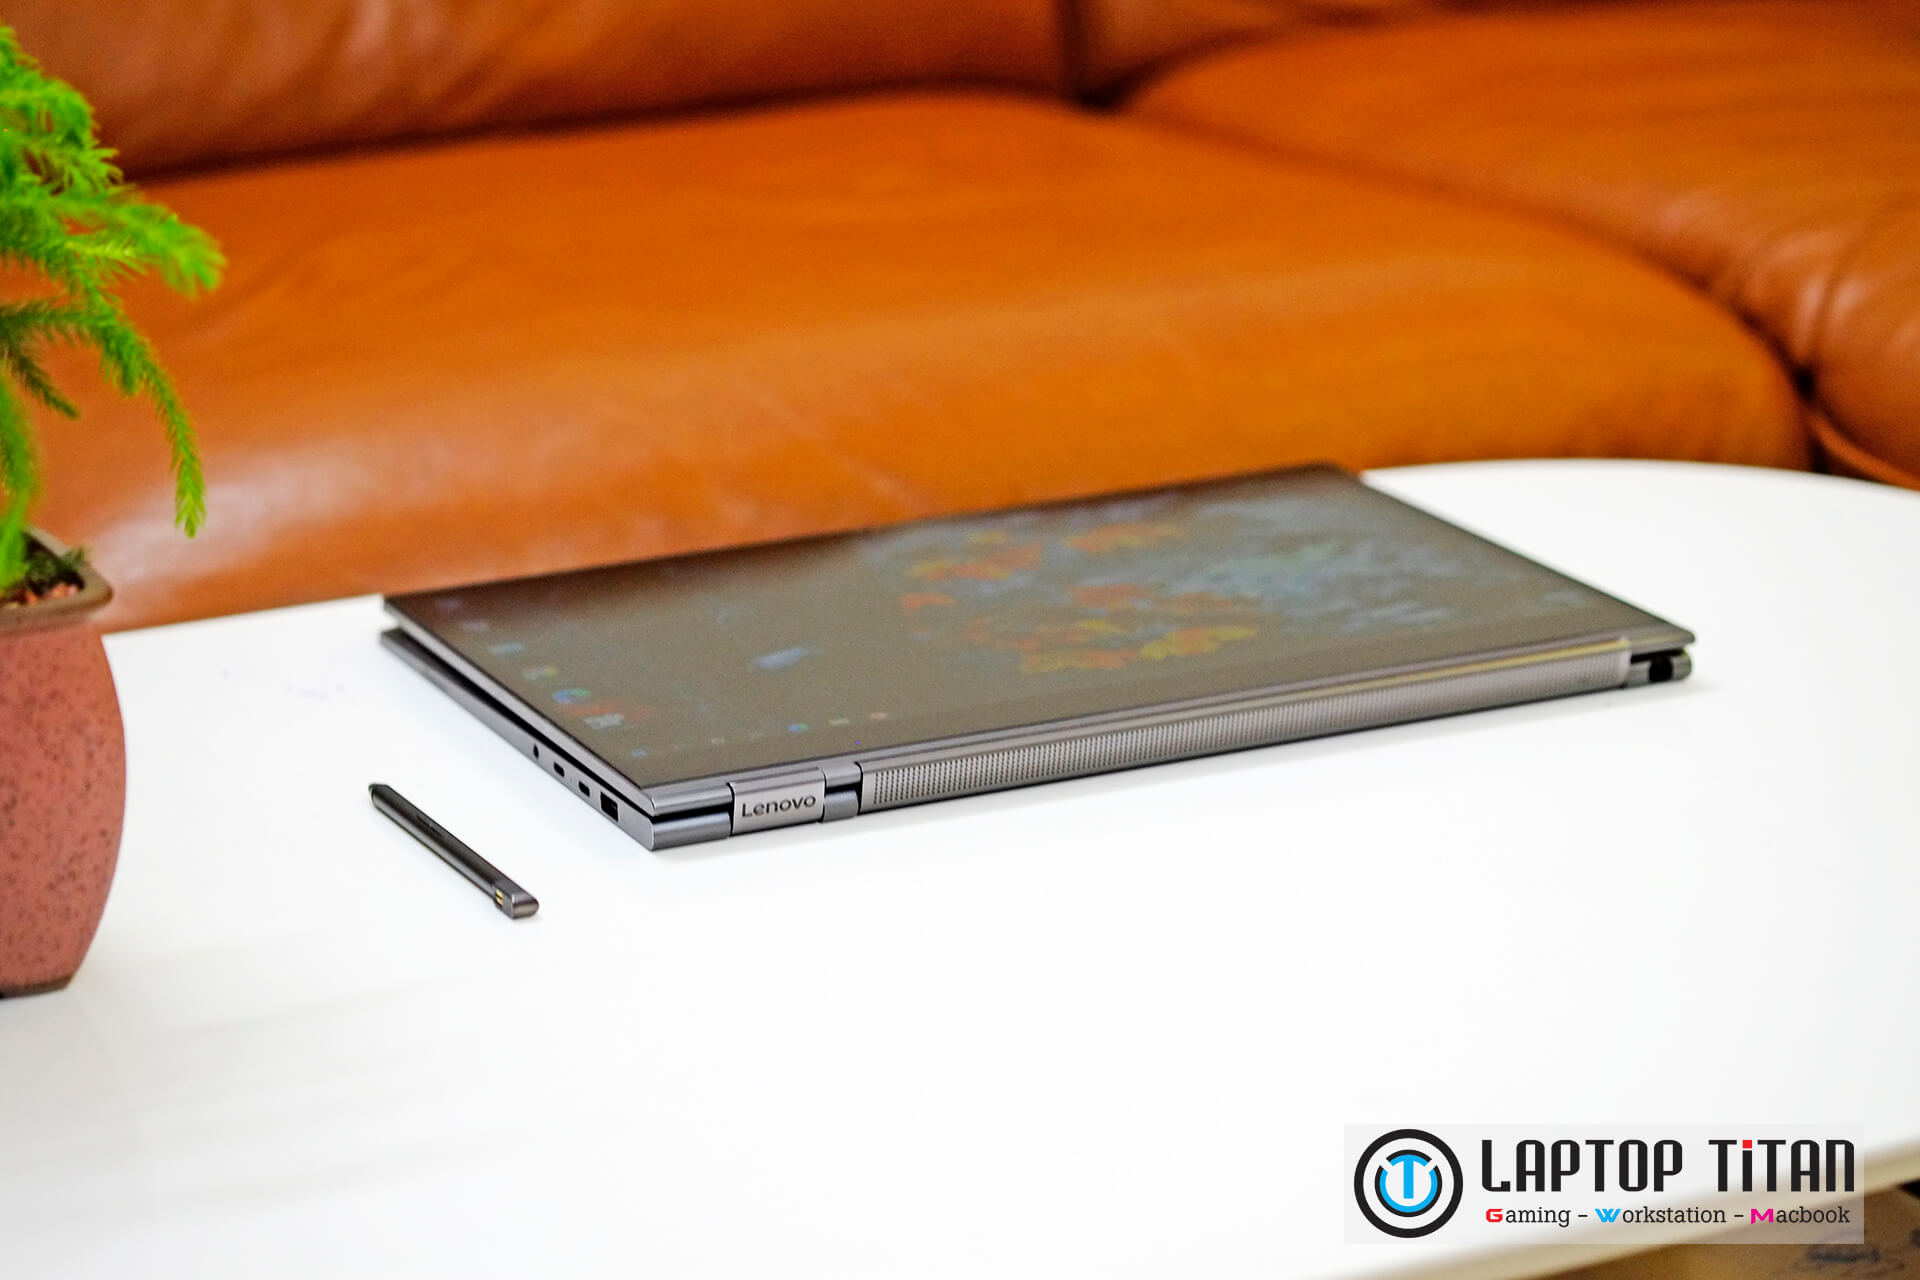 Lenovo Yoga C930 Laptoptitan 016